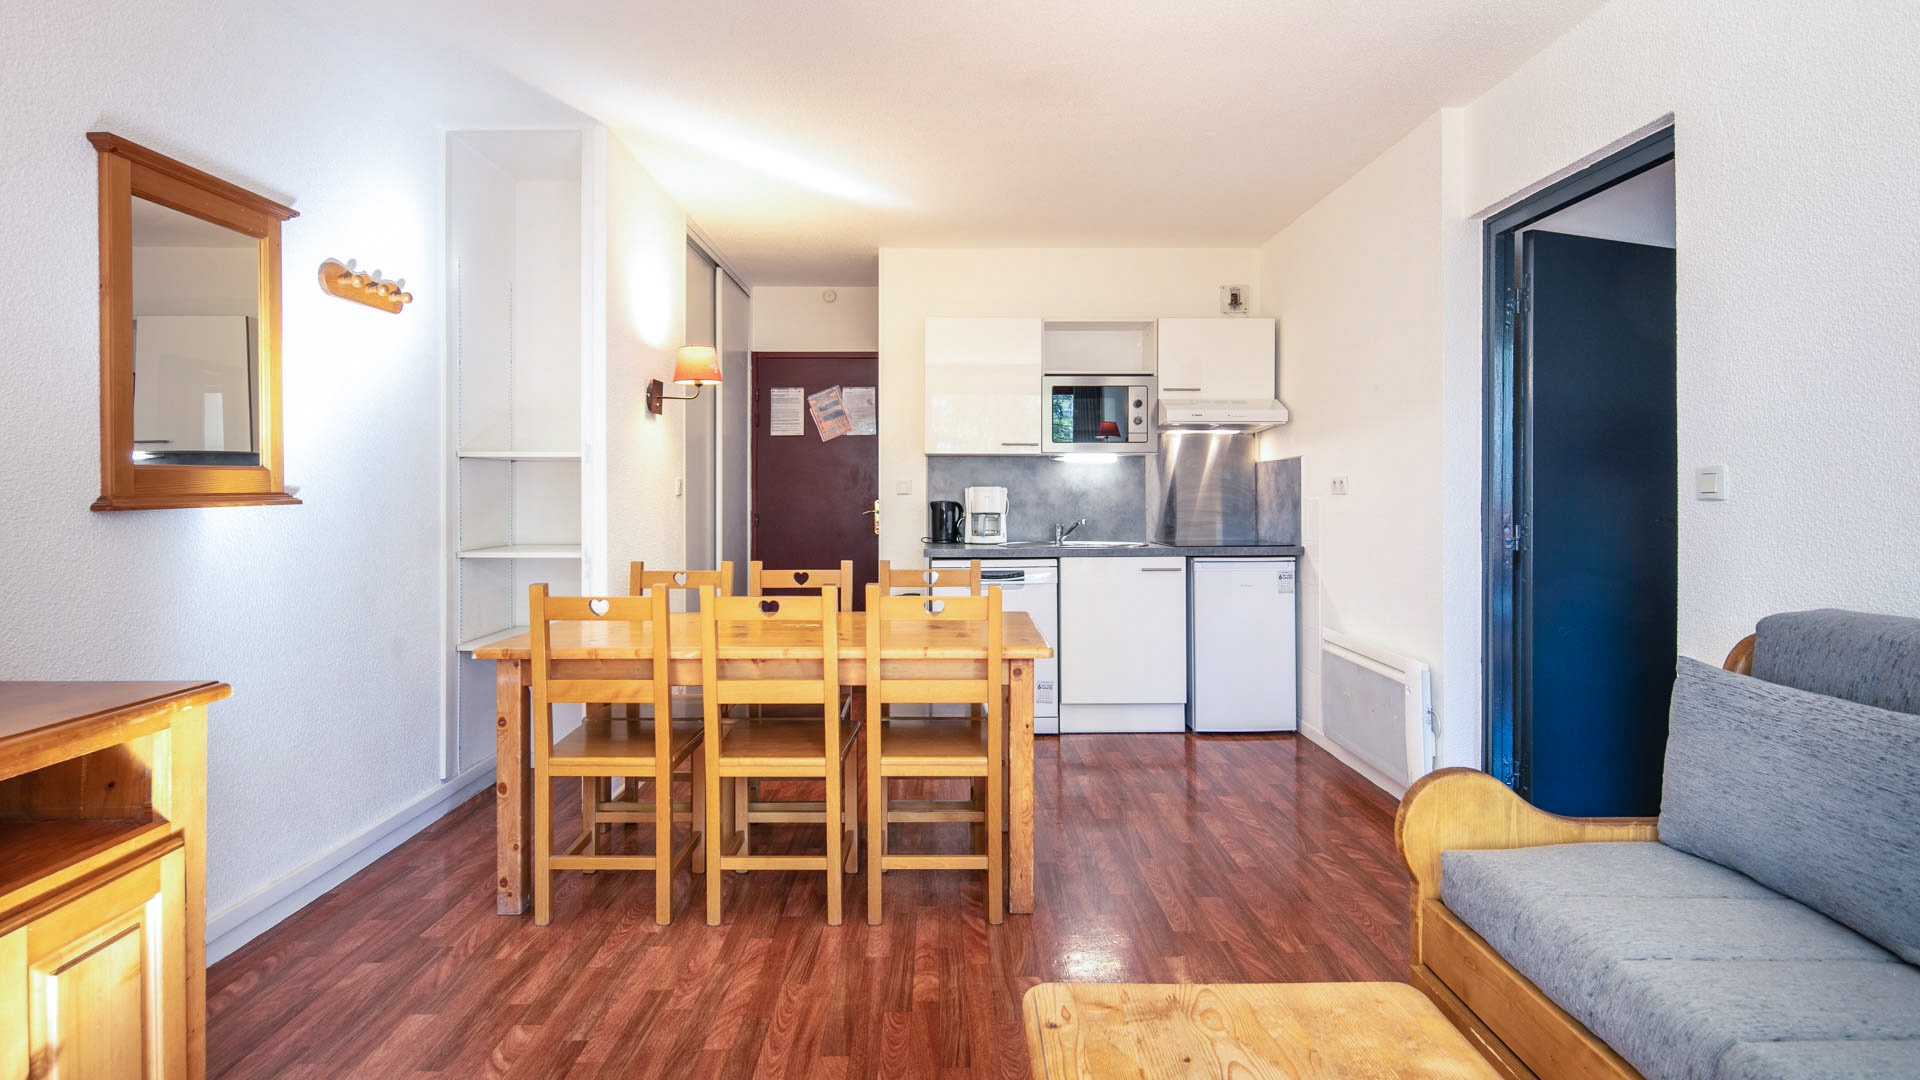 L'Edelweiss in Les 2 Alpes - Appartement für 6 Personen: Wohnbereich (Beispiel)